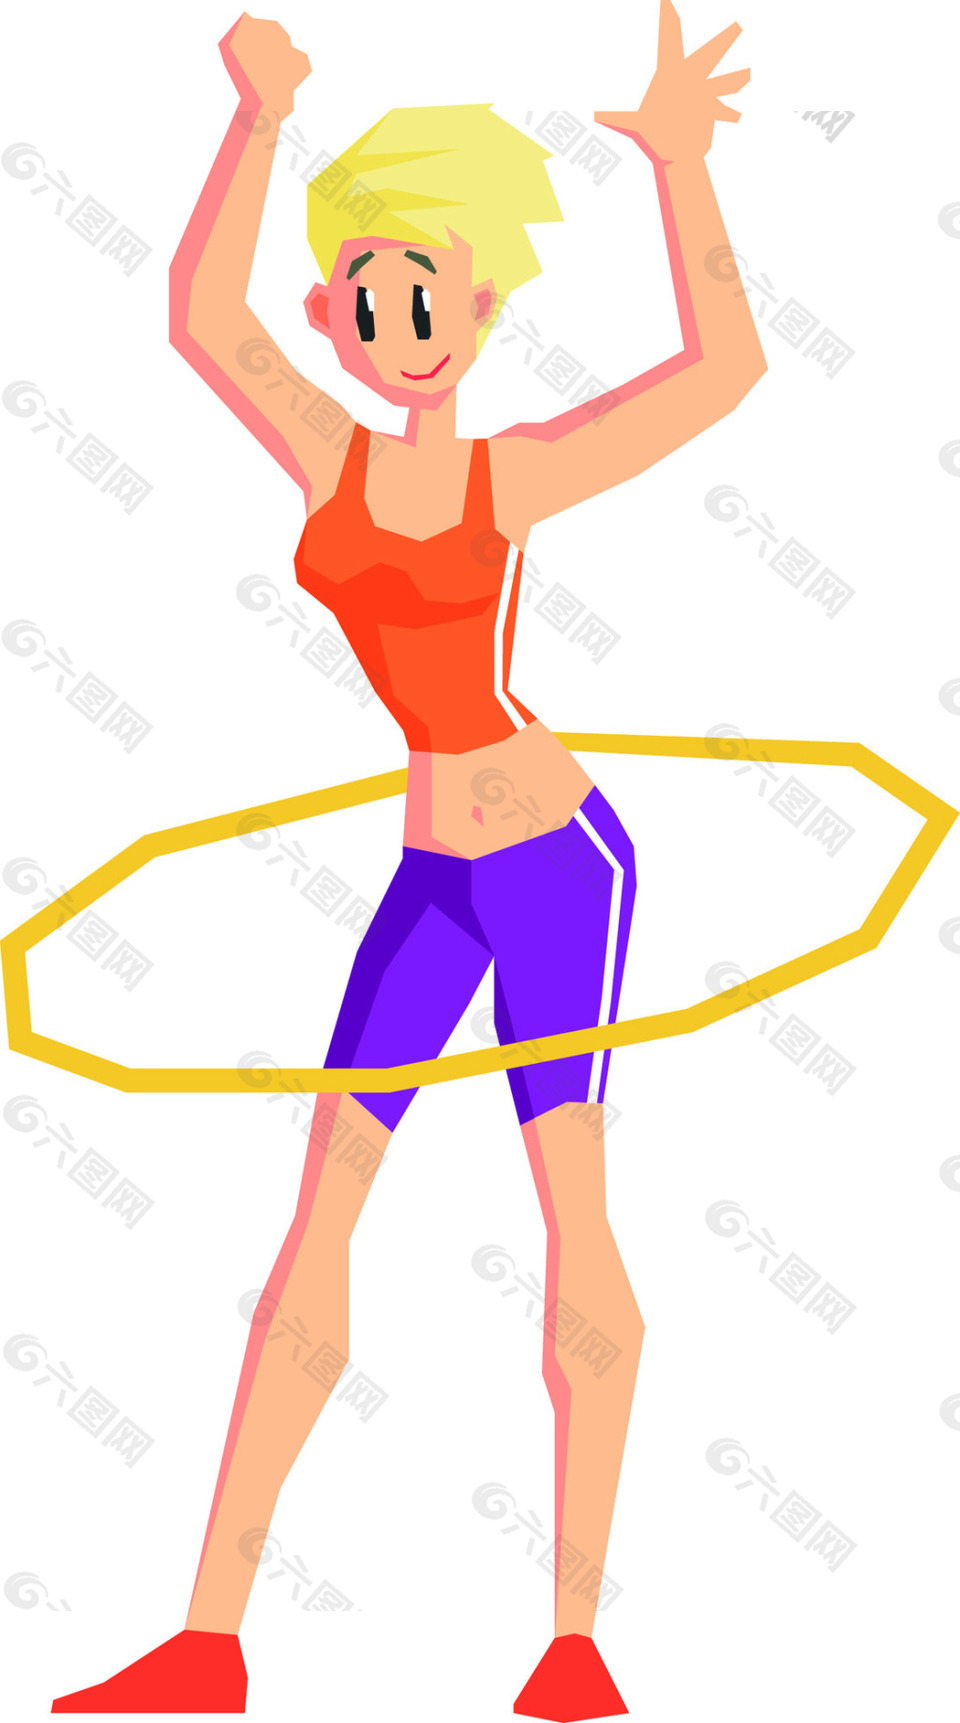 呼啦圈运动健身的人卡通矢量素材文件